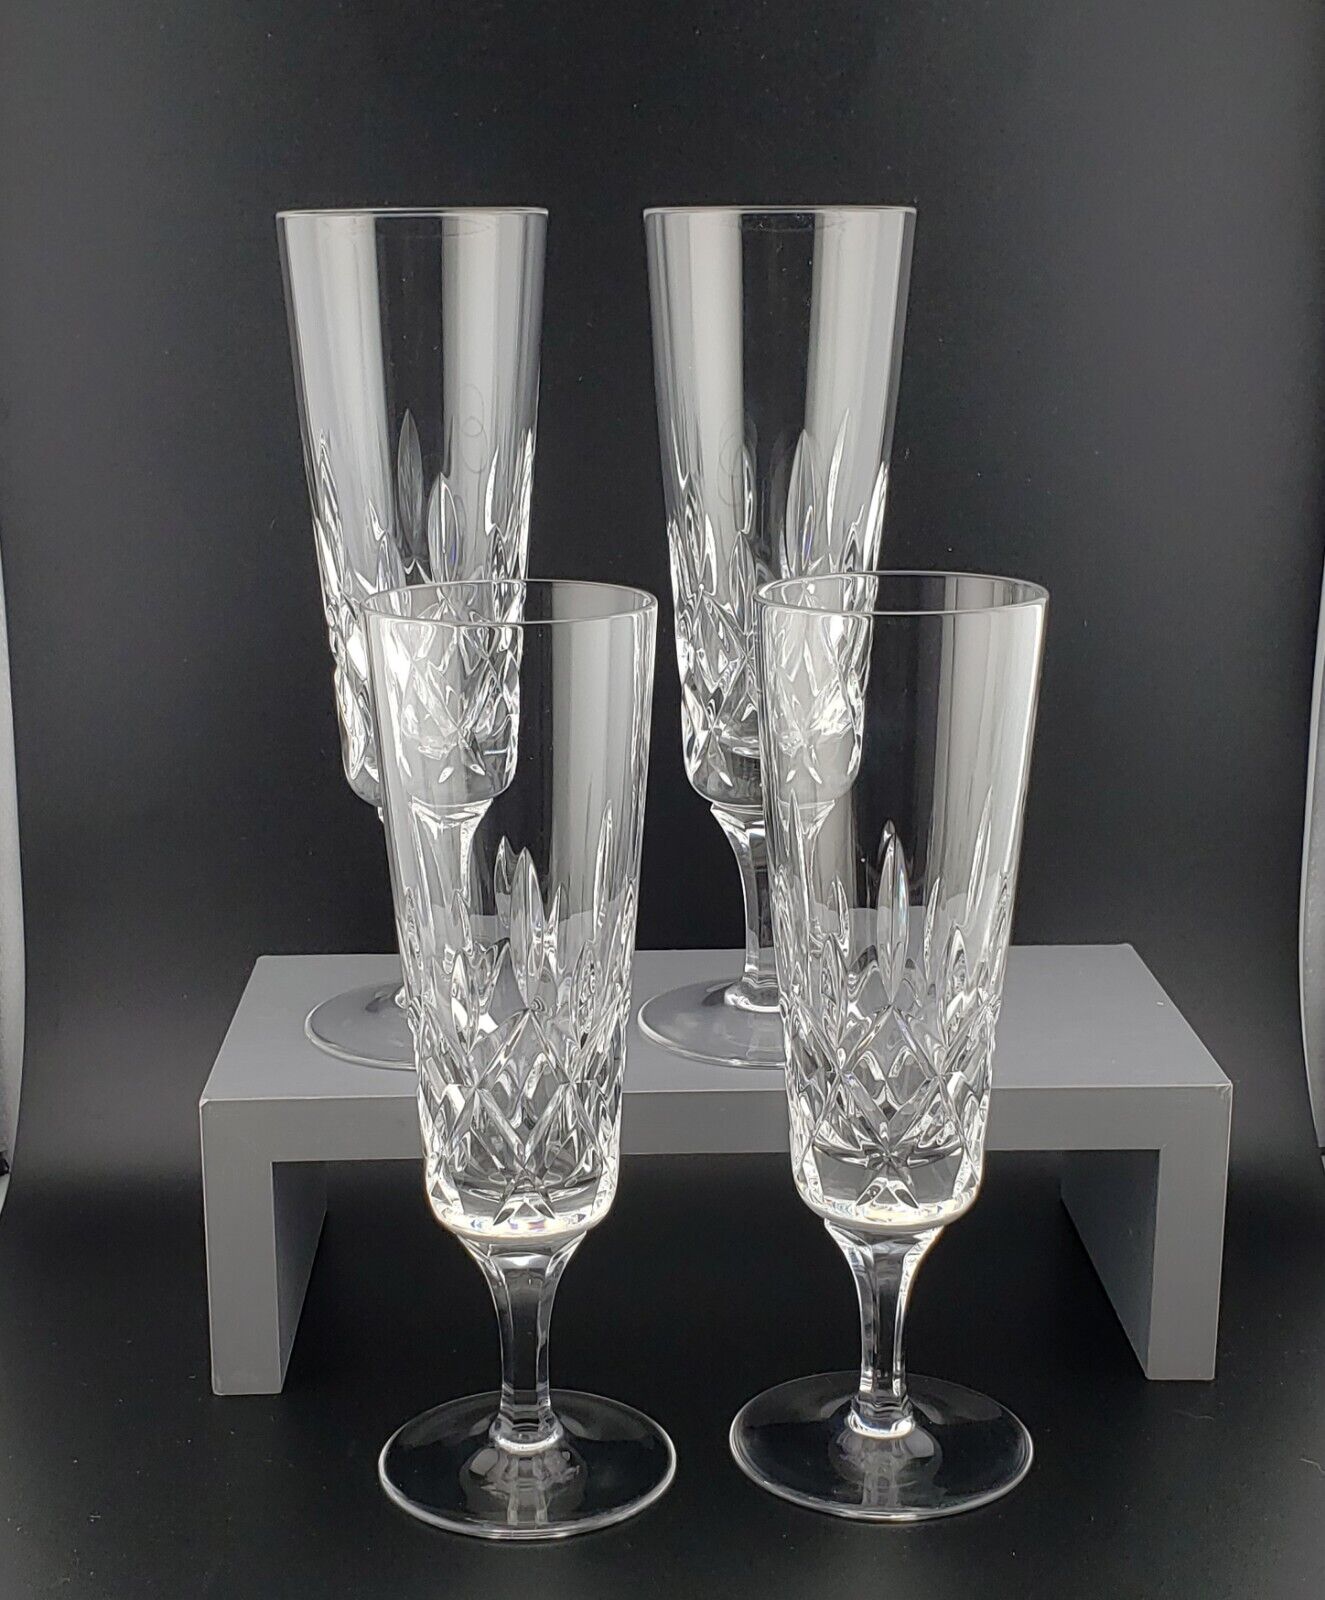 Gorham Crystal King Edward Champagne Flute Glasses Set of 4